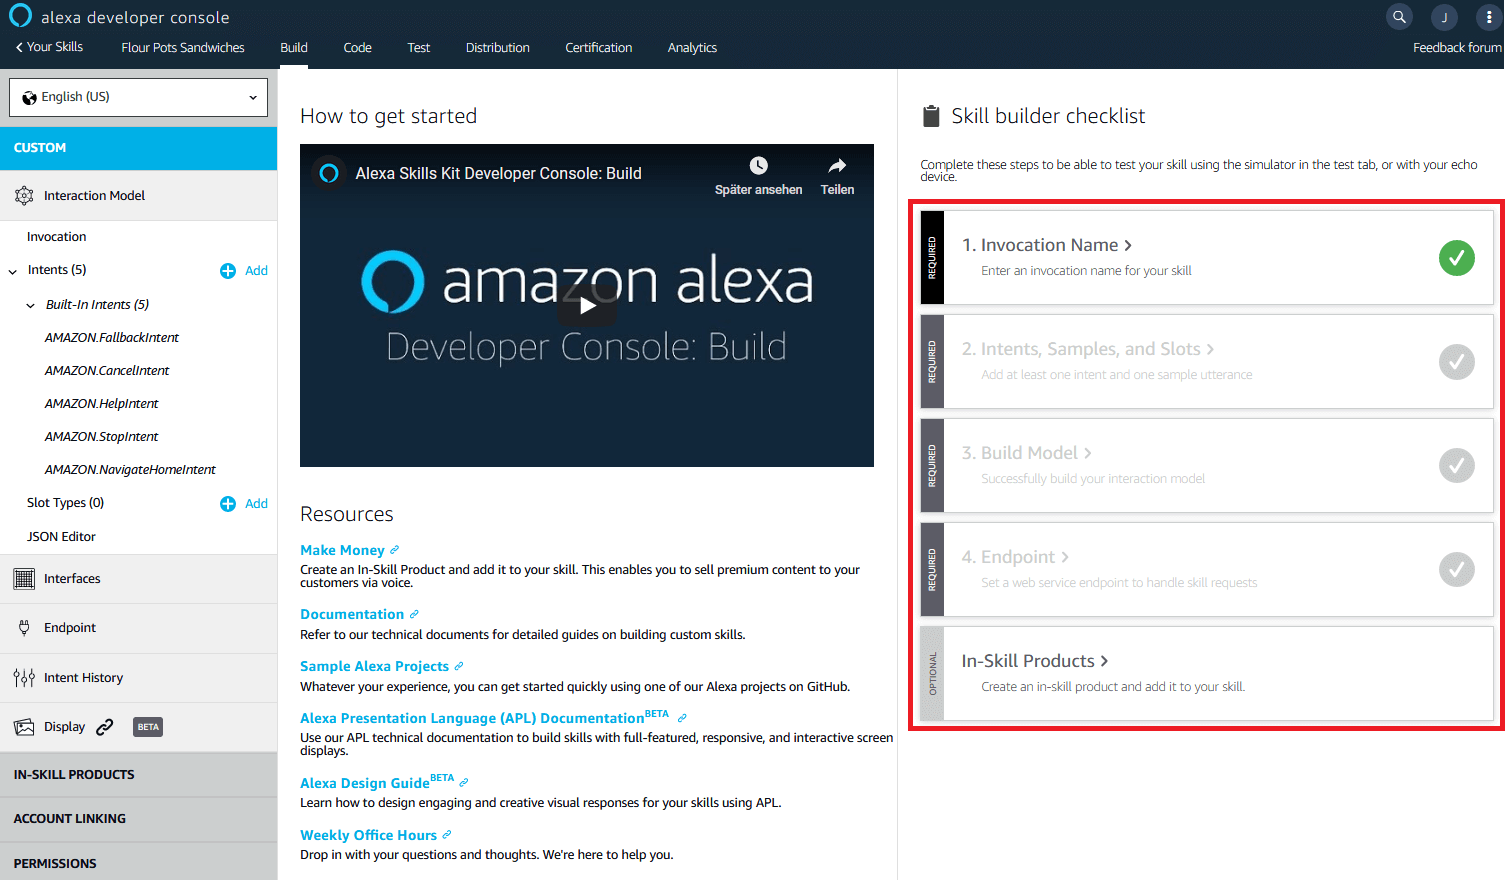 Console sviluppatori di Alexa: pagina di riepilogo nella sezione “Build”